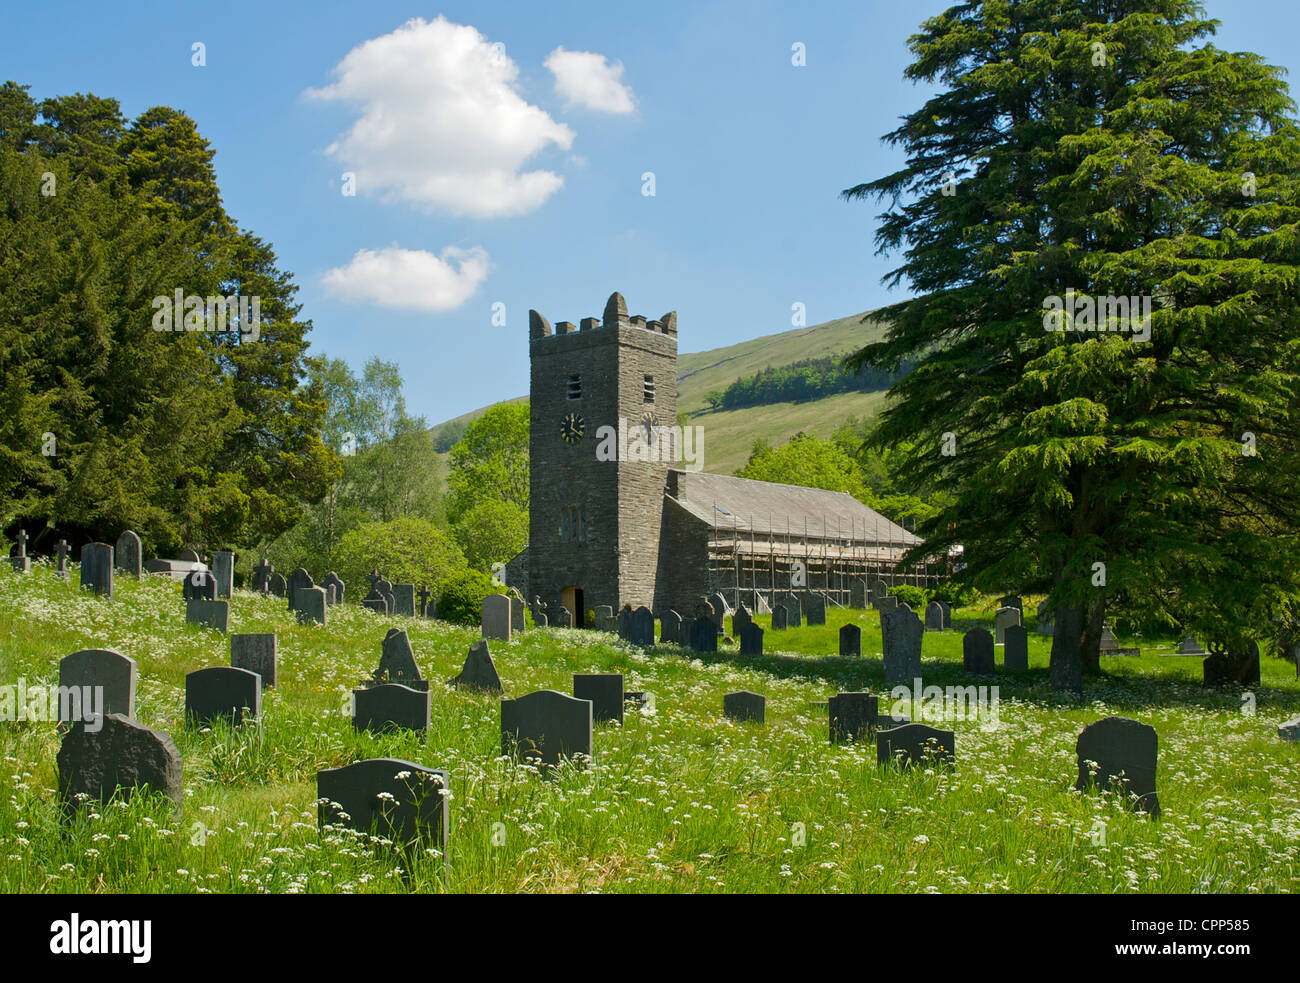 Chiesa del Gesù con i ponteggi, Troutbeck, Parco Nazionale del Distretto dei Laghi, Cumbria, England Regno Unito Foto Stock